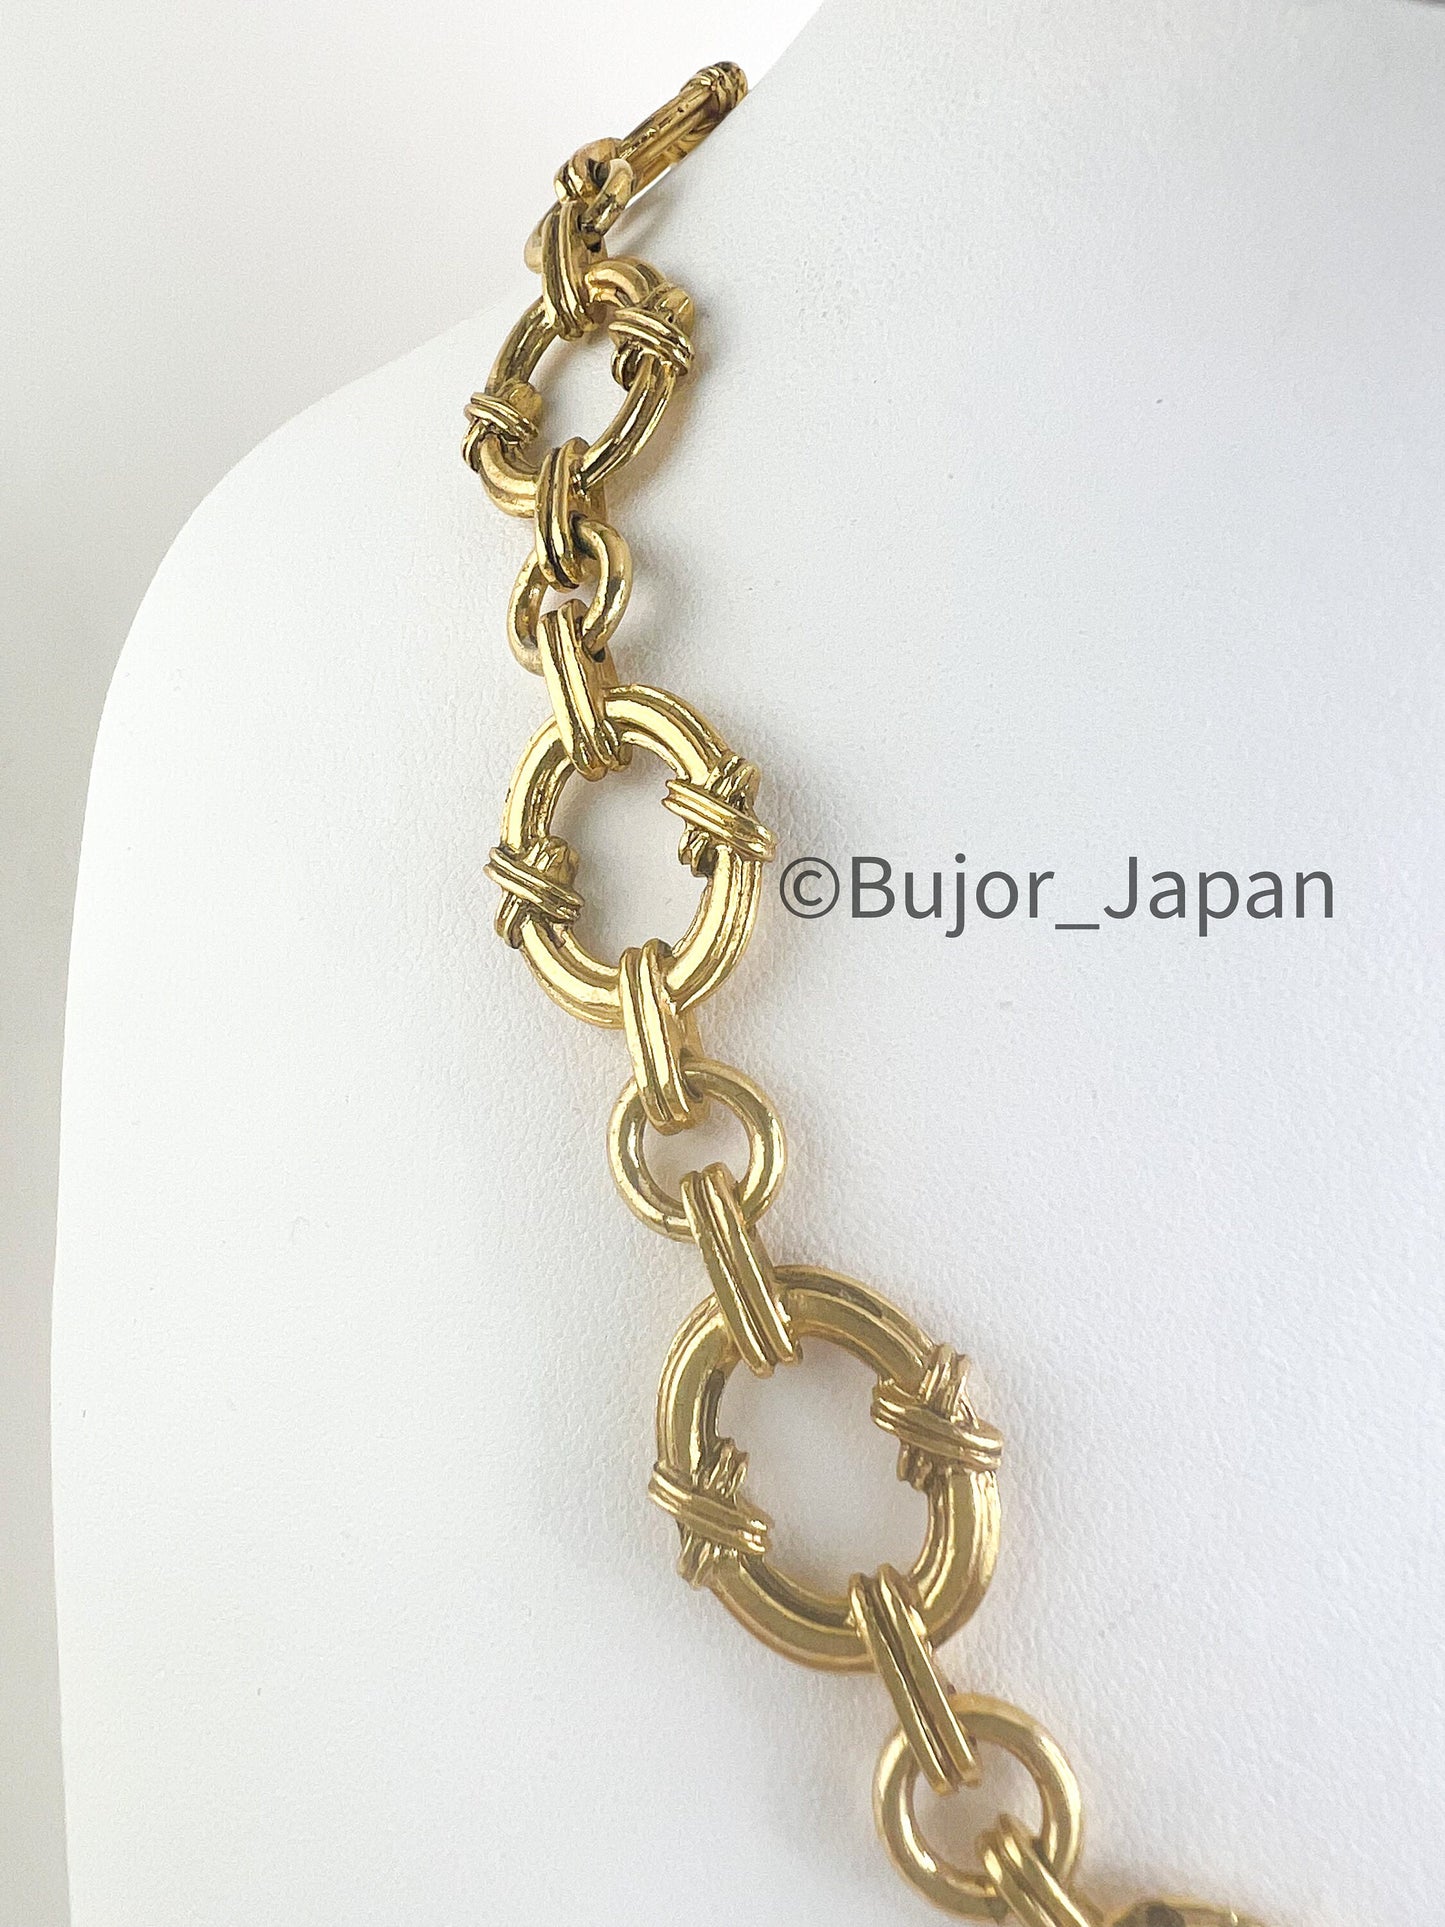 YSL Vintage, Yves Saint Laurent Necklace, Gold Chunky Chain Necklace, link chain necklace, Minimalist Necklace, necklace unisex